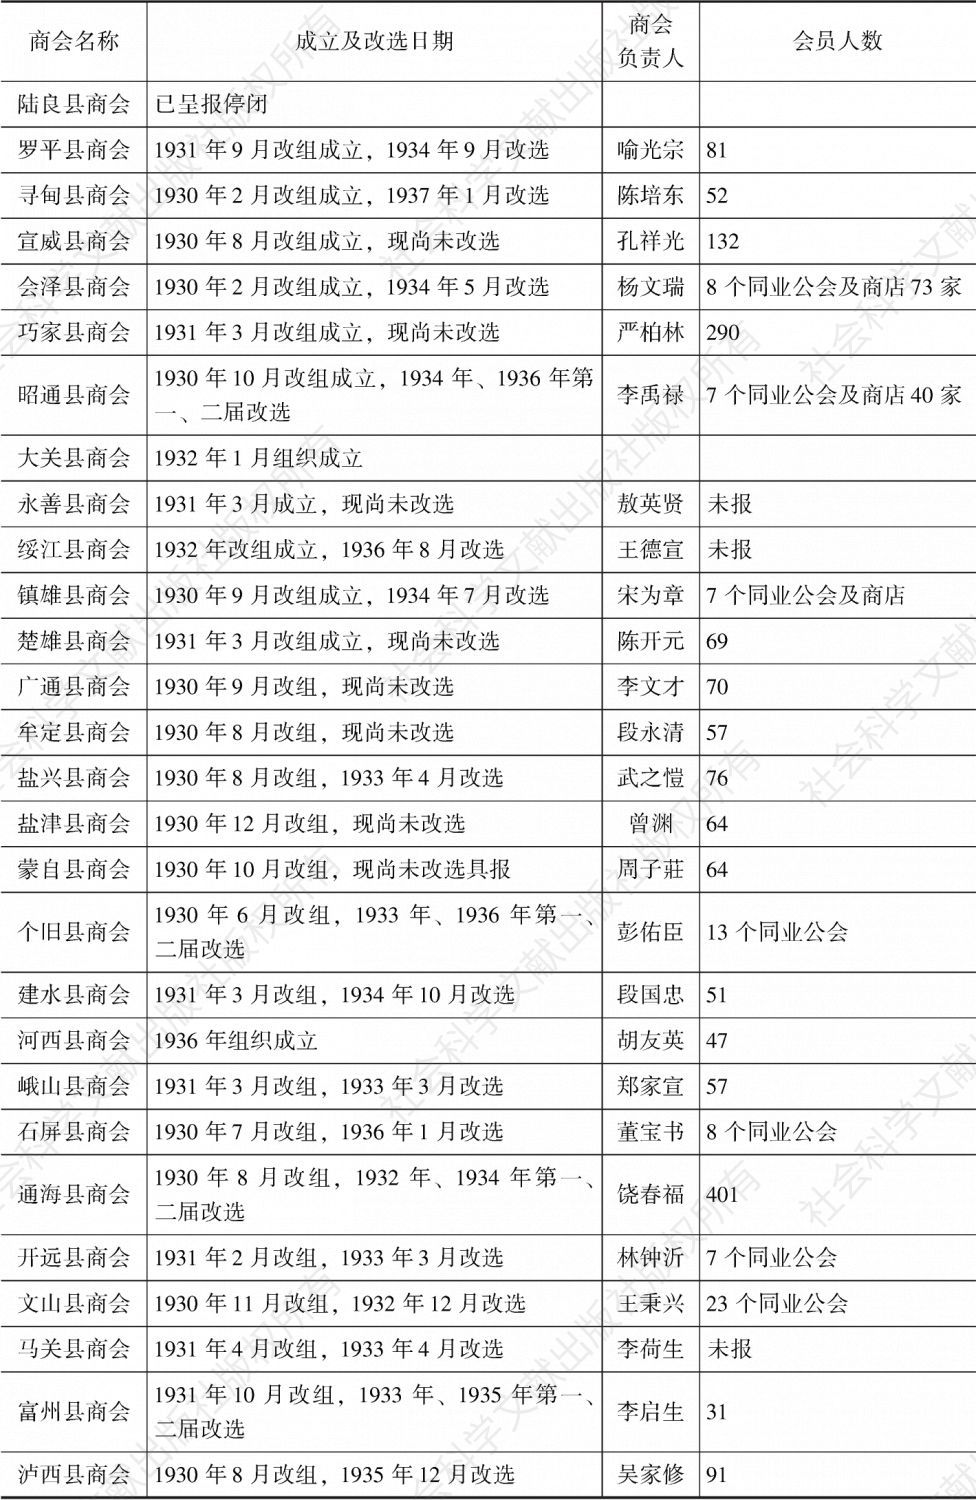 表3-1 1936年云南各地商会一览表-续表1